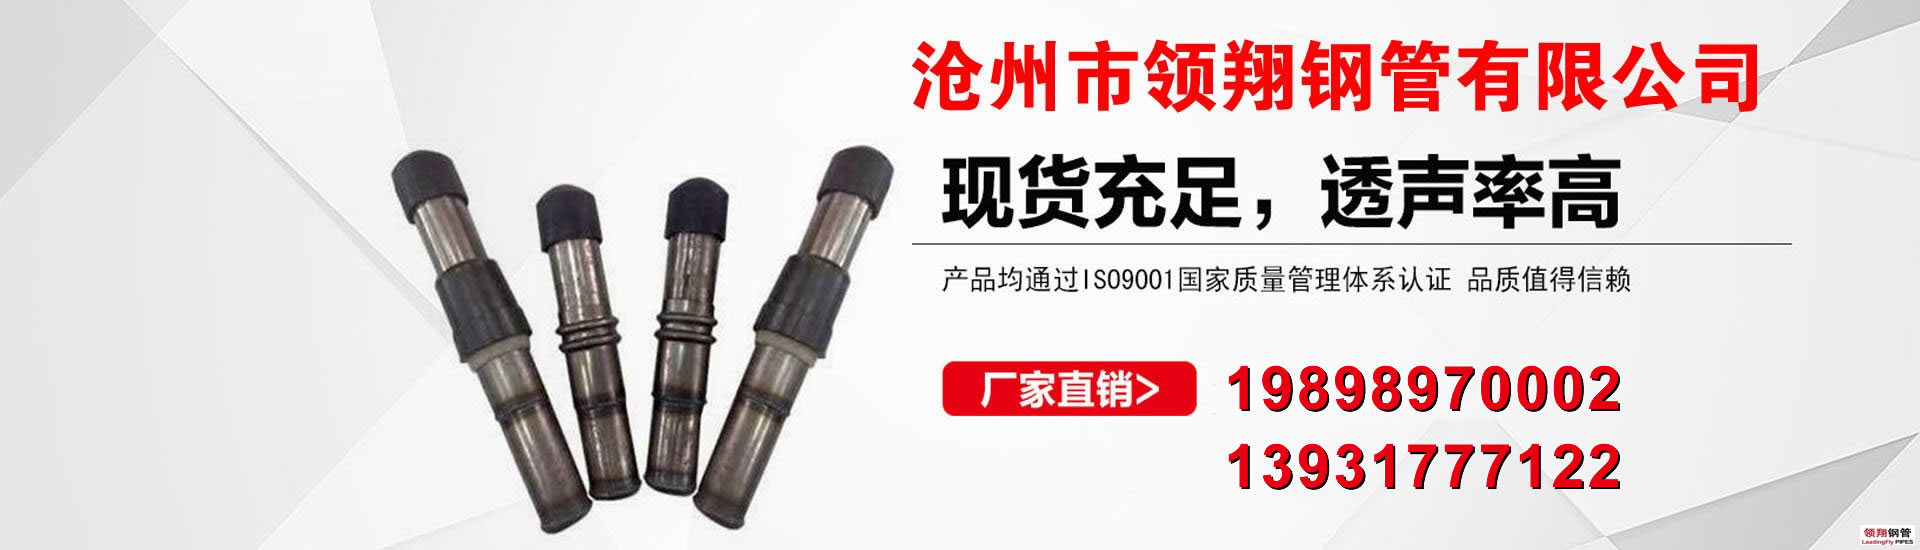 声测管厂家-桩基声测管现货价格-沧州市168精准计划网下载钢管有限公司